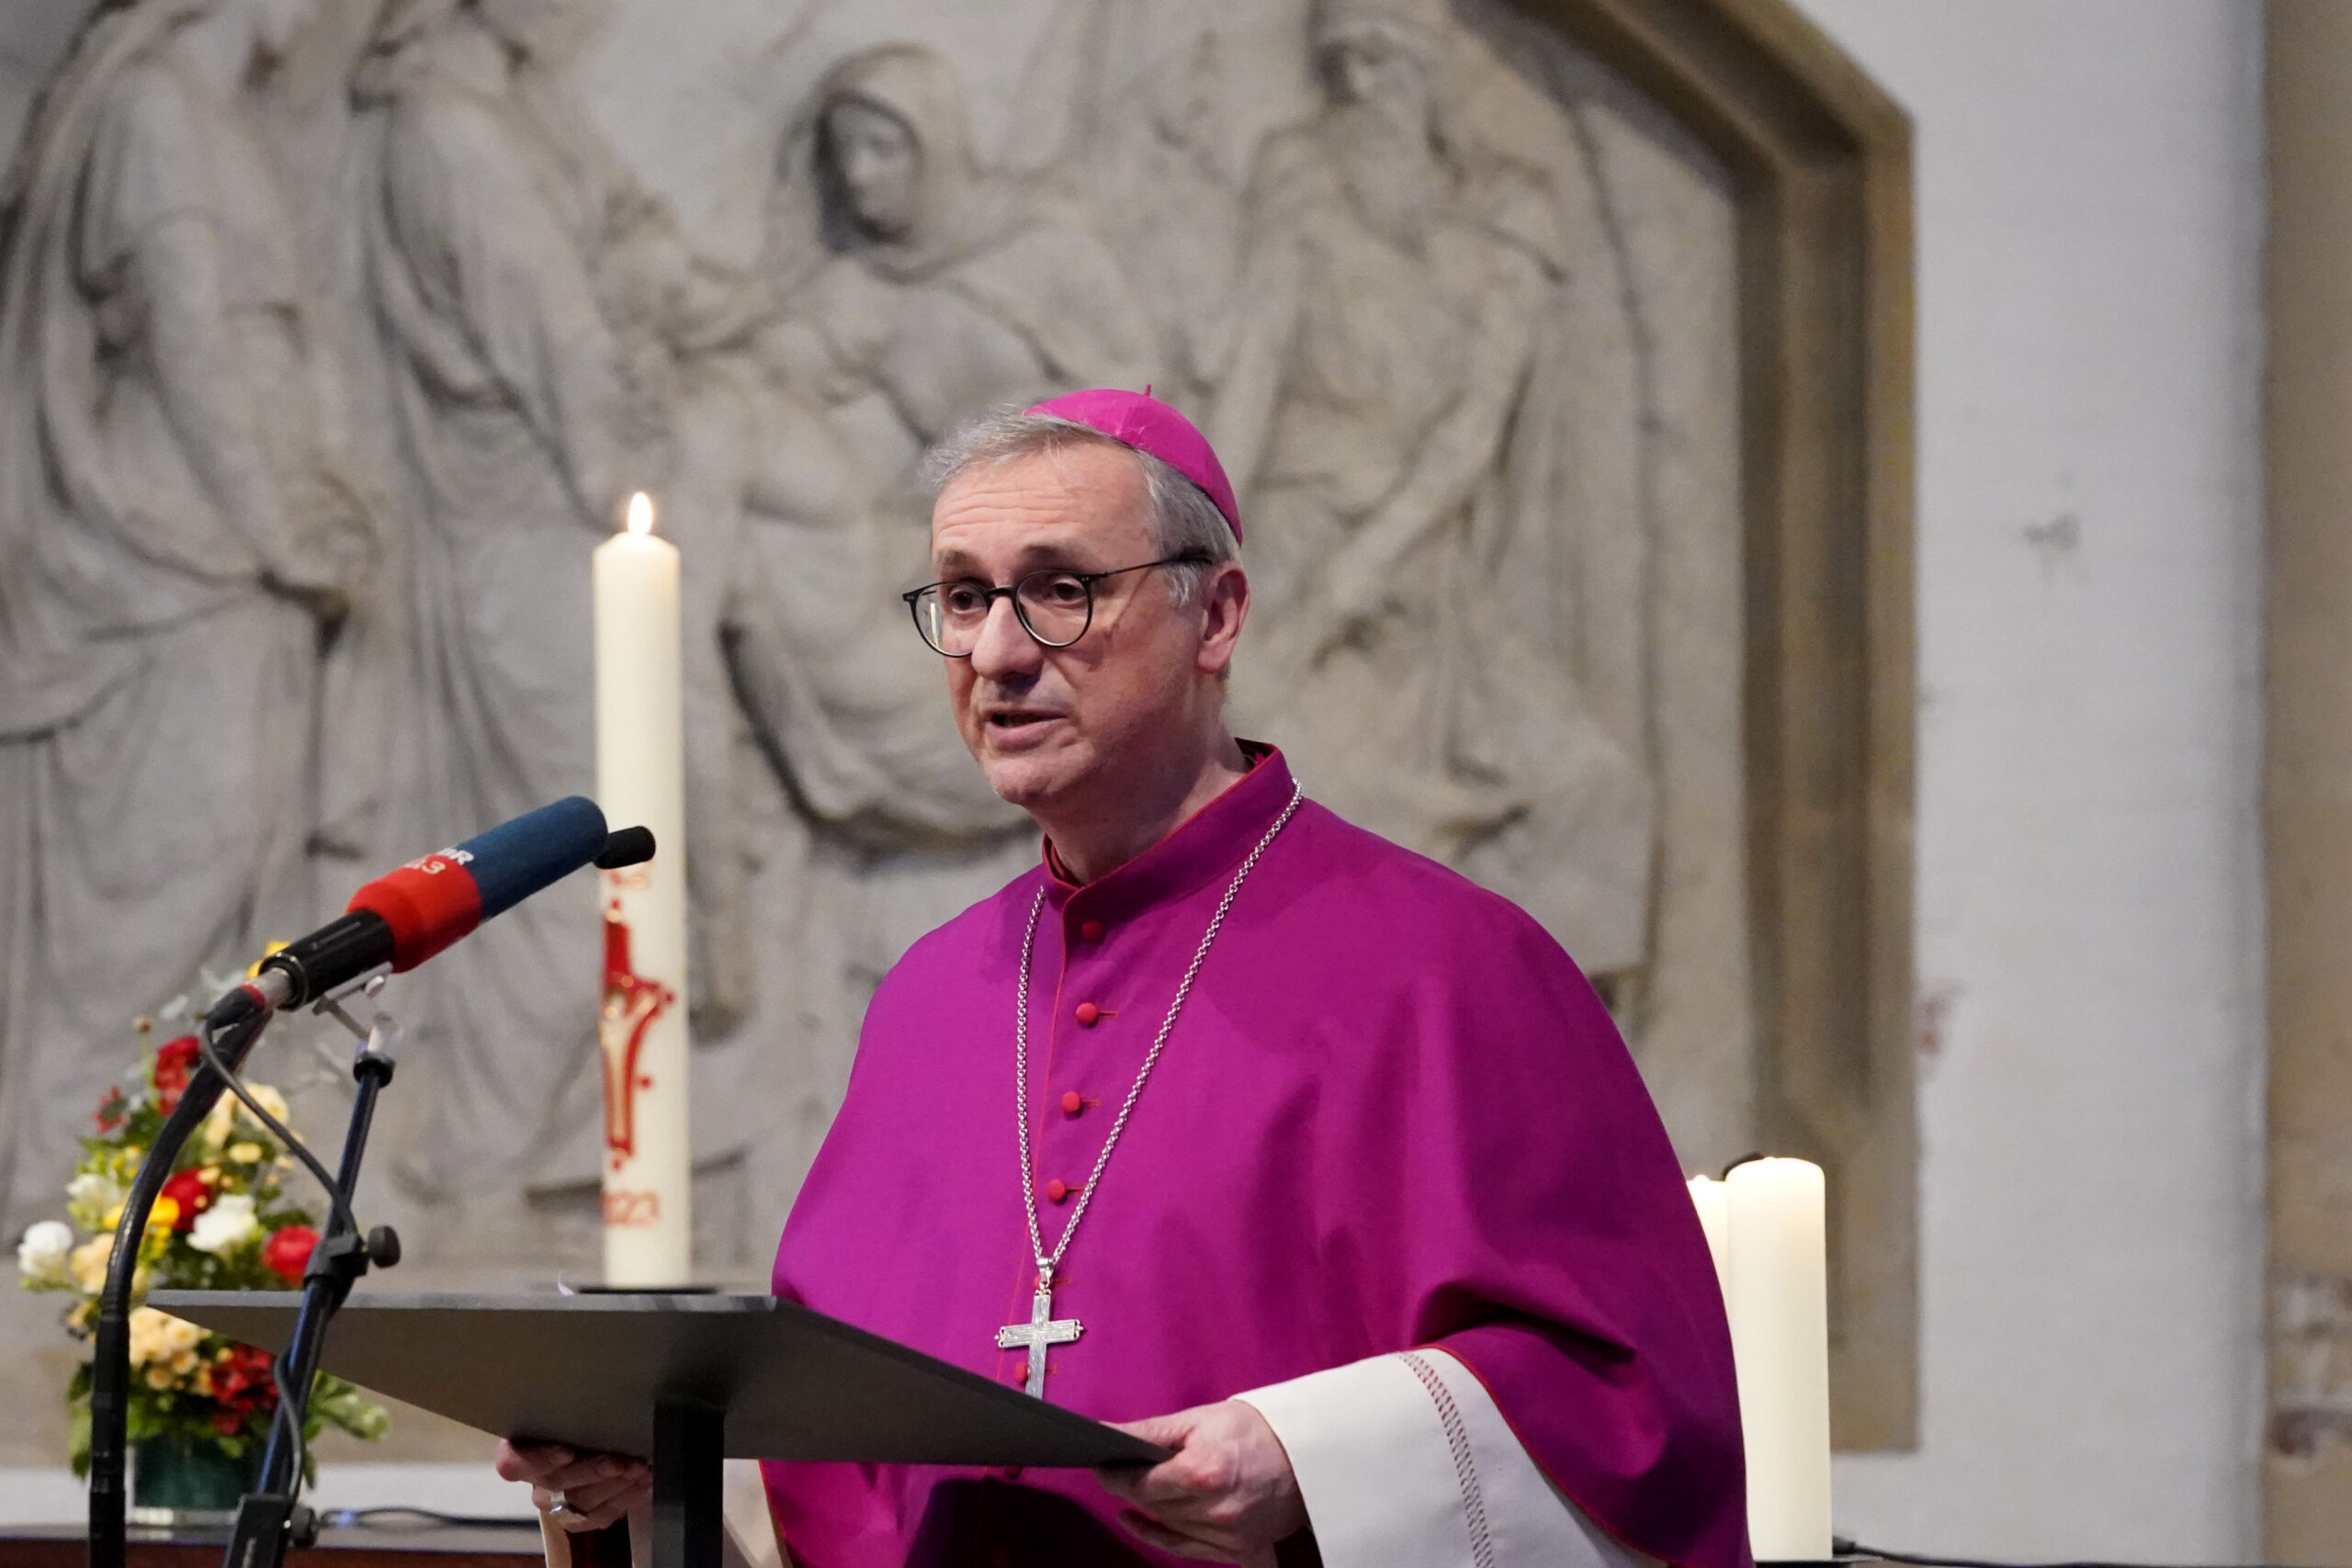 Erzbischof Stefan Heße, Erzbistum Hamburg, spricht beim Gedenkgottesdienst für die Opfer des Amoklaufs bei den Zeugen Jehovas in Hamburg in der Hauptkirche St. Petri.